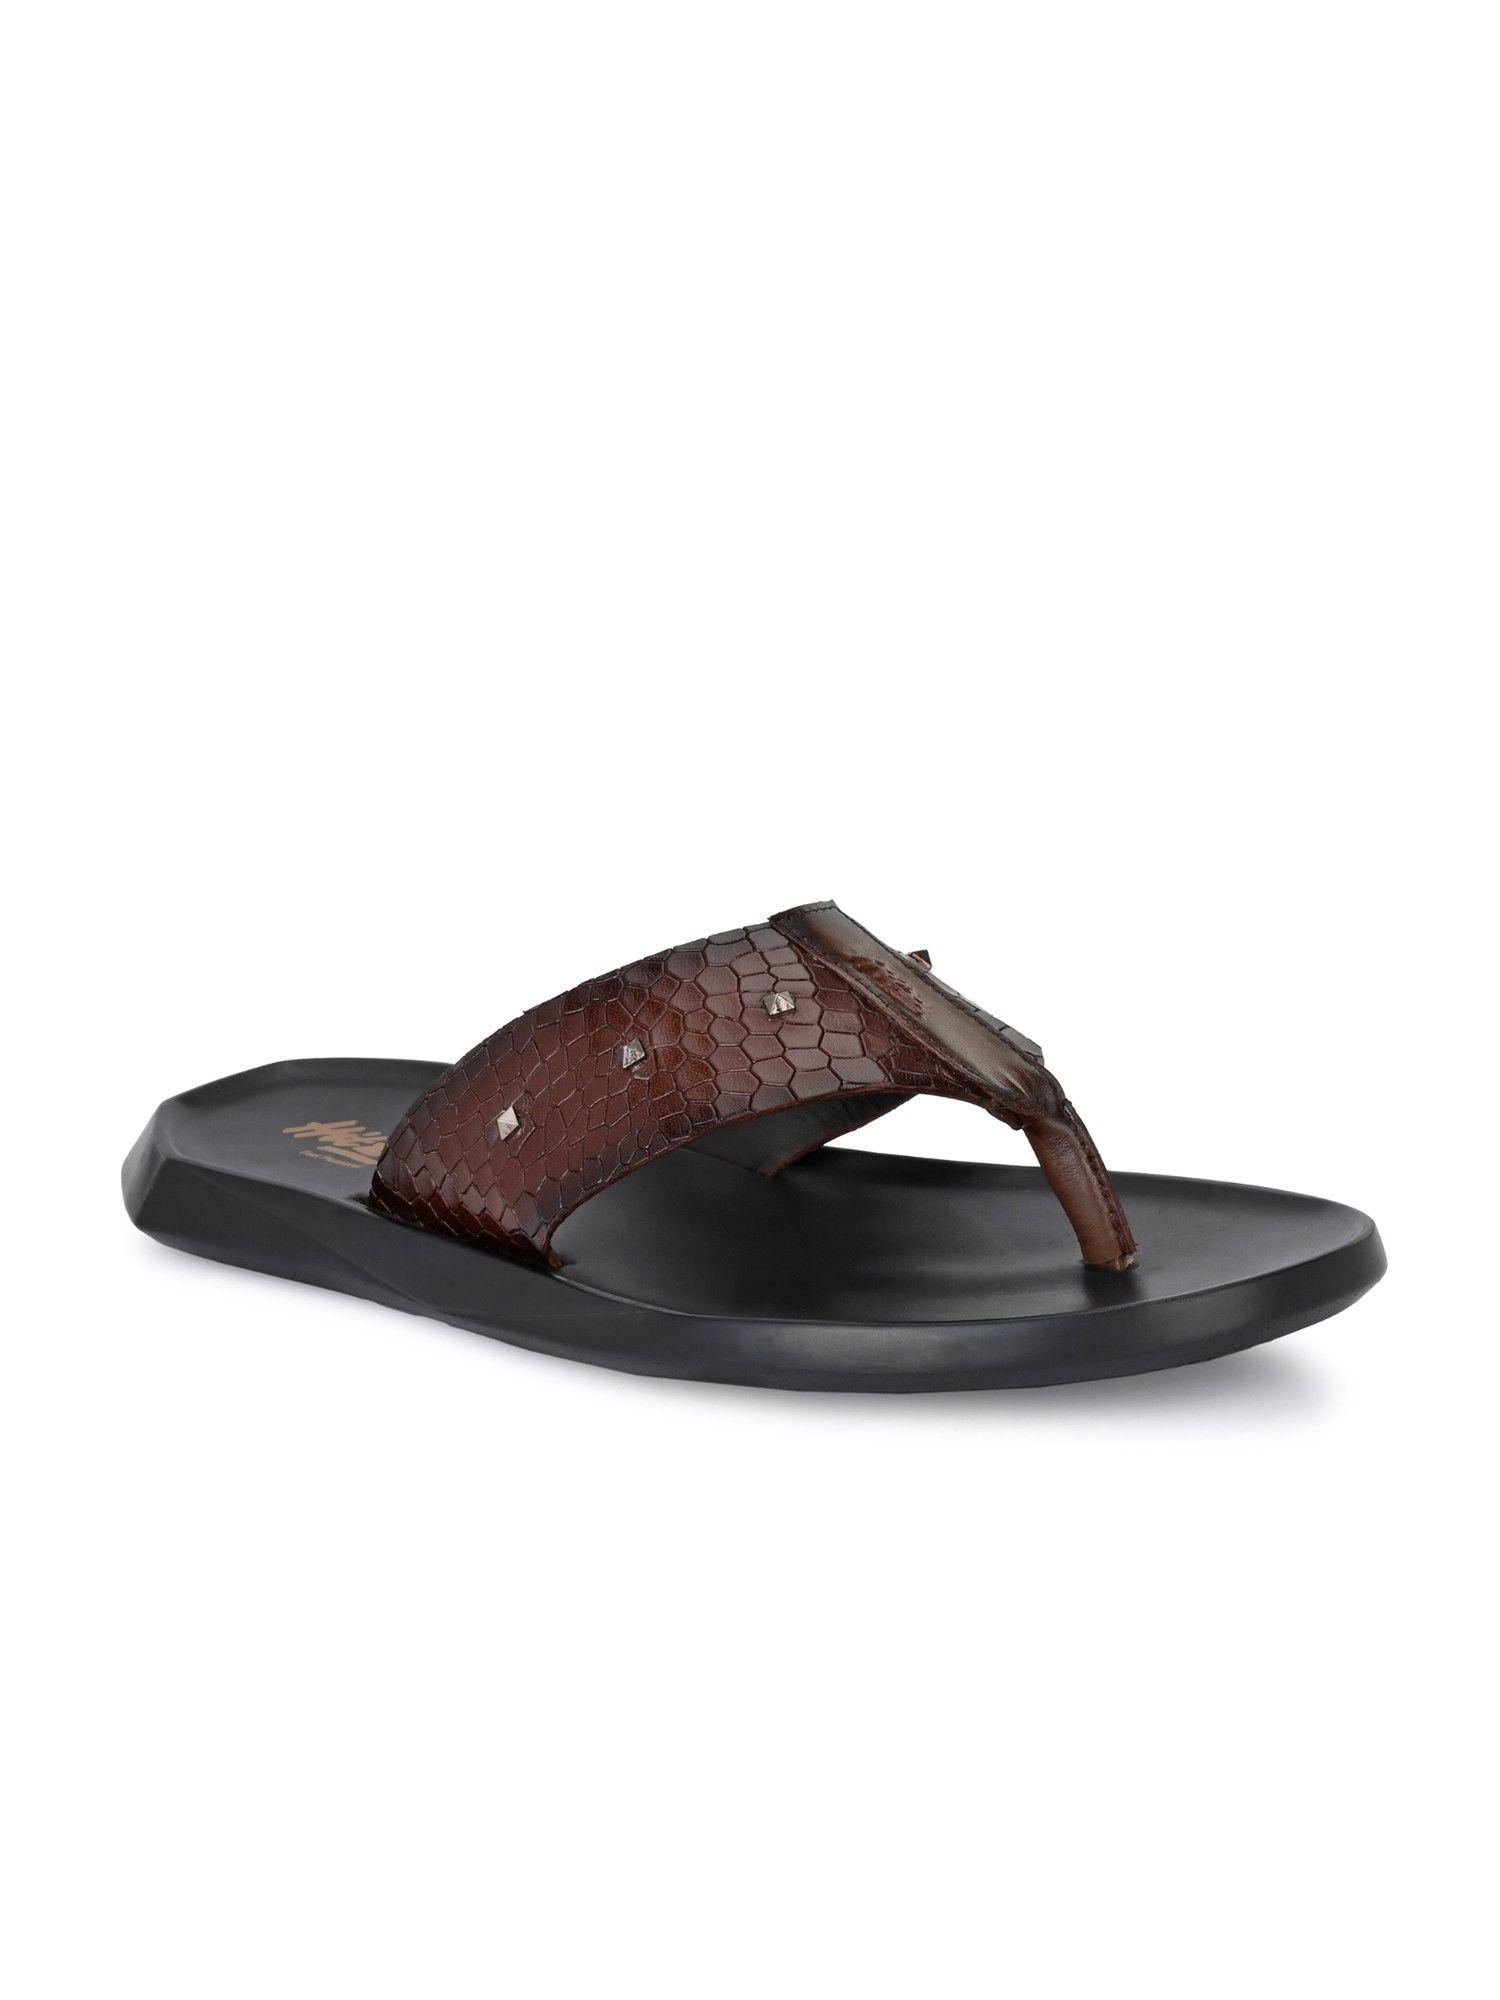 men's tan leather open toe slippers